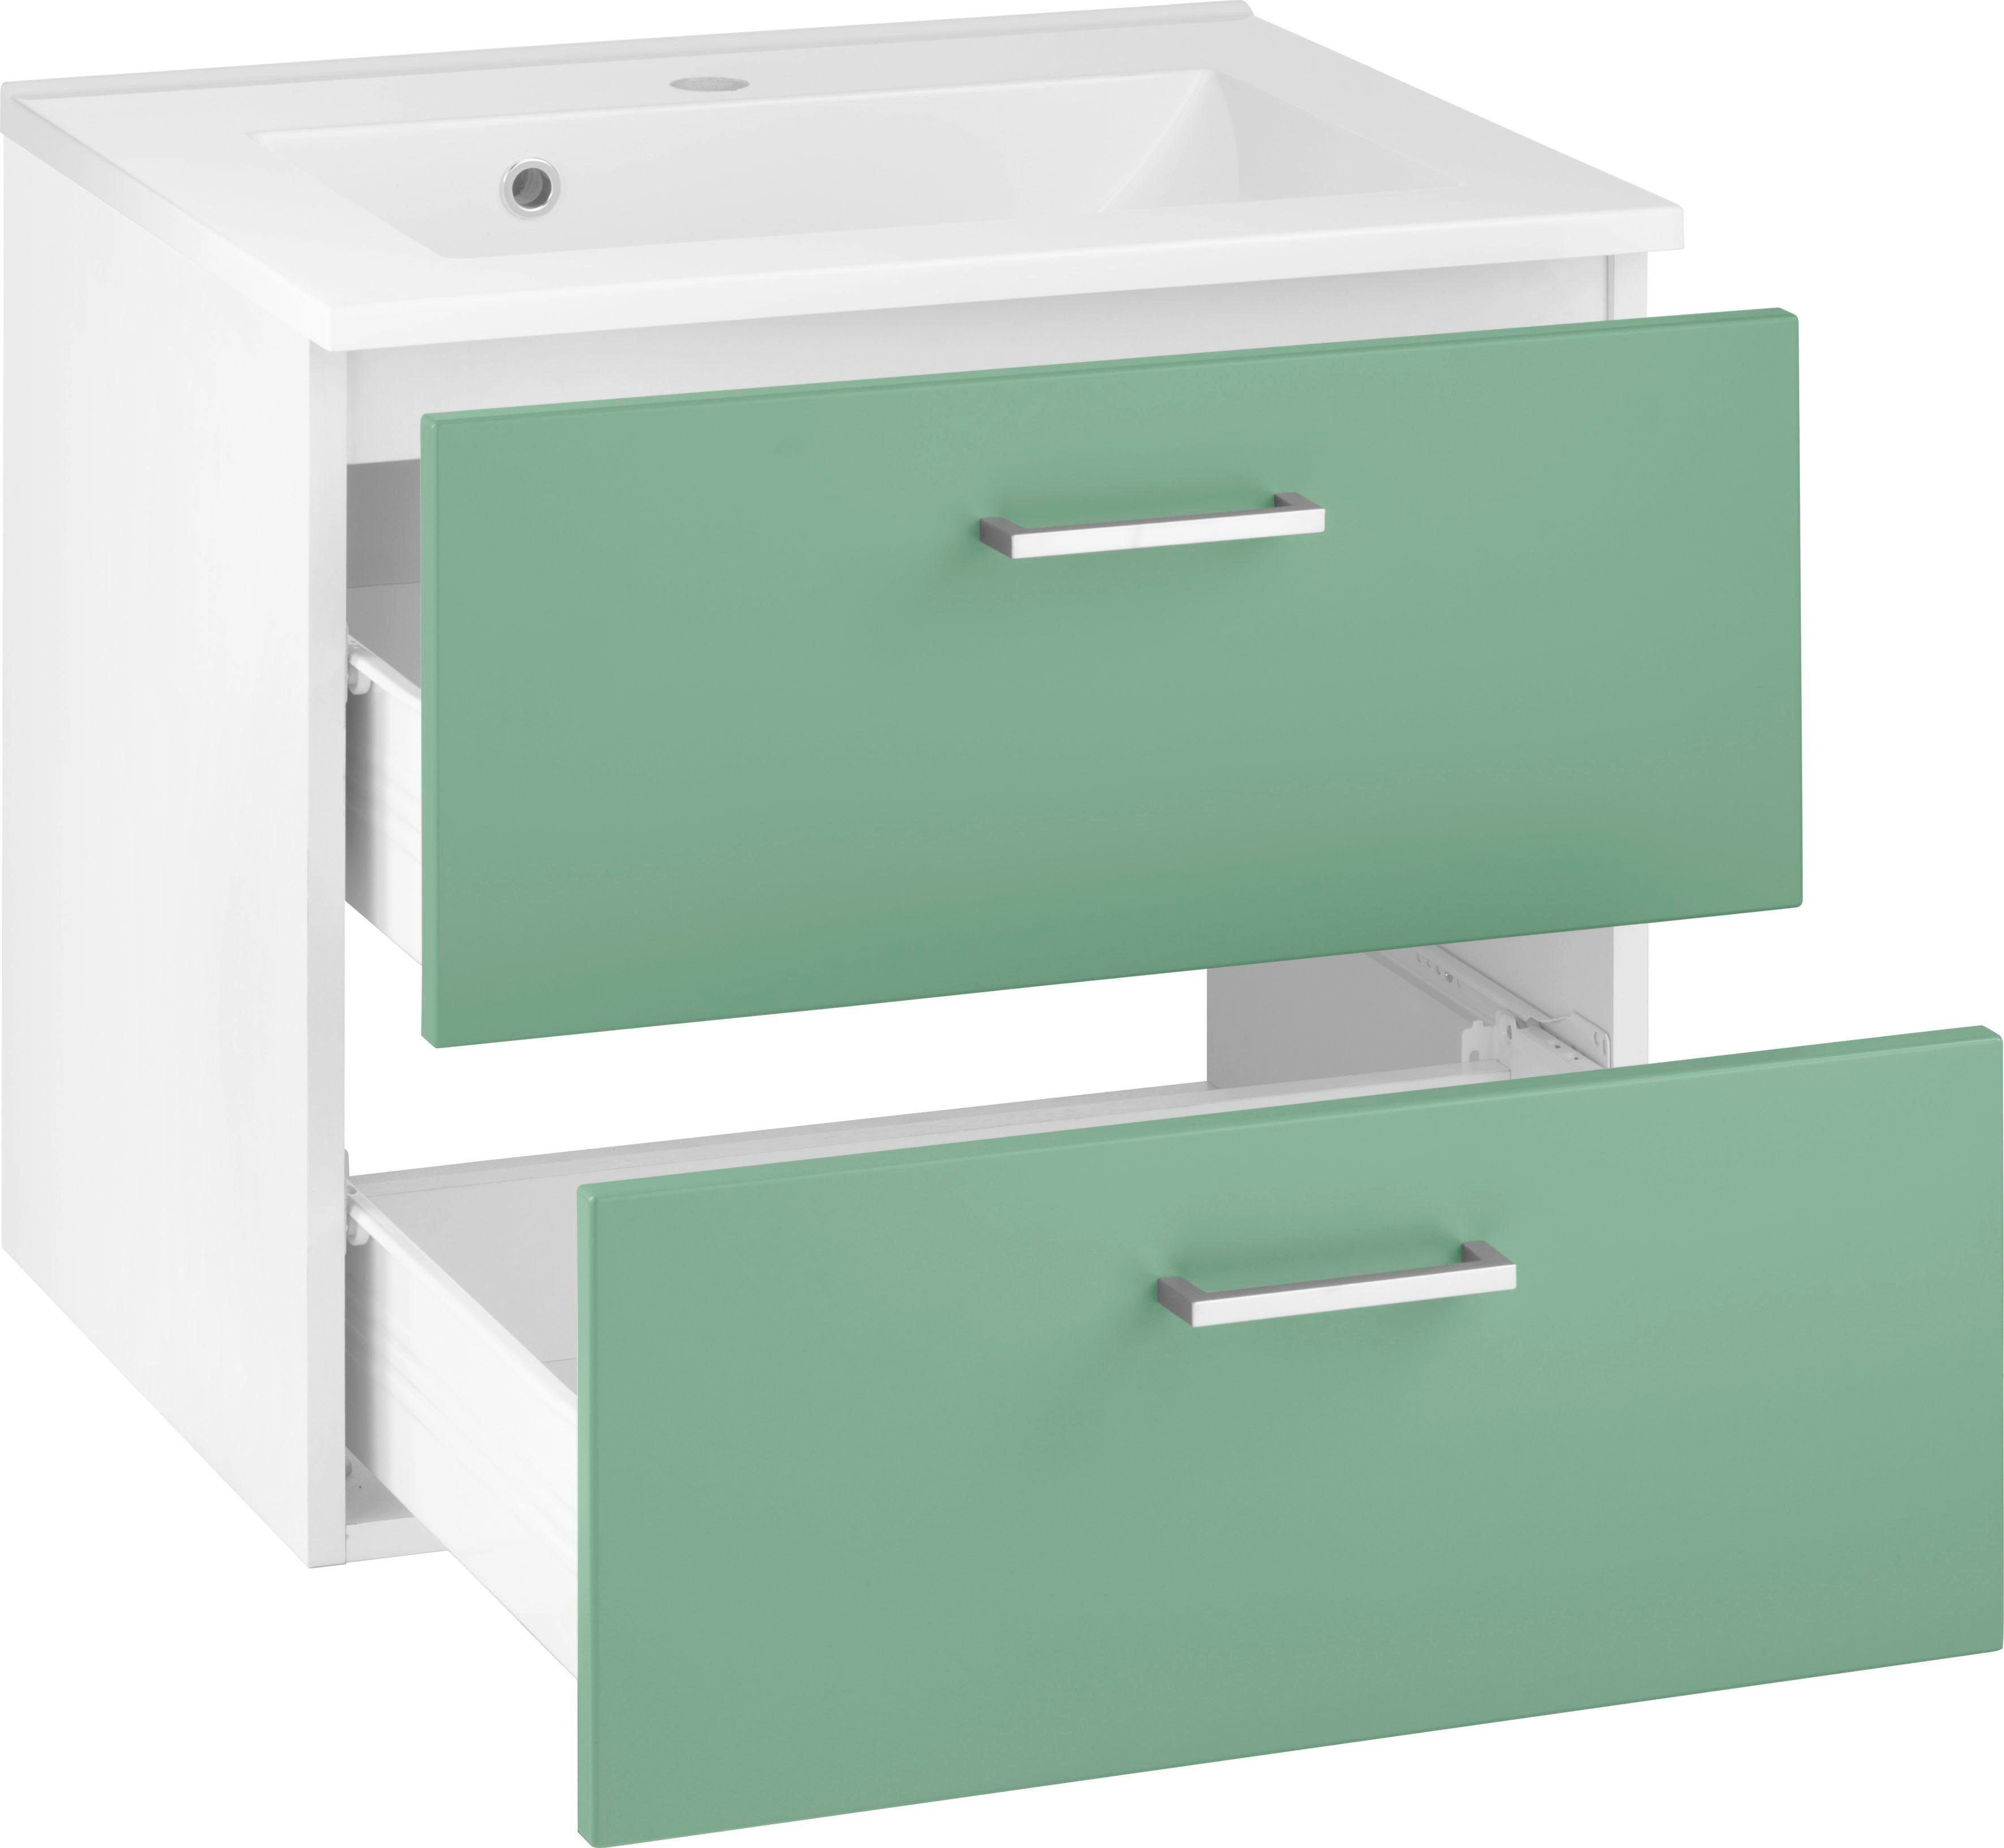 HELD MÖBEL Waschbeckenunterschrank Waschbecken, inkl. Ribera 60 cm Waschtisch grün/grün/weiß Badmöbel, Breite